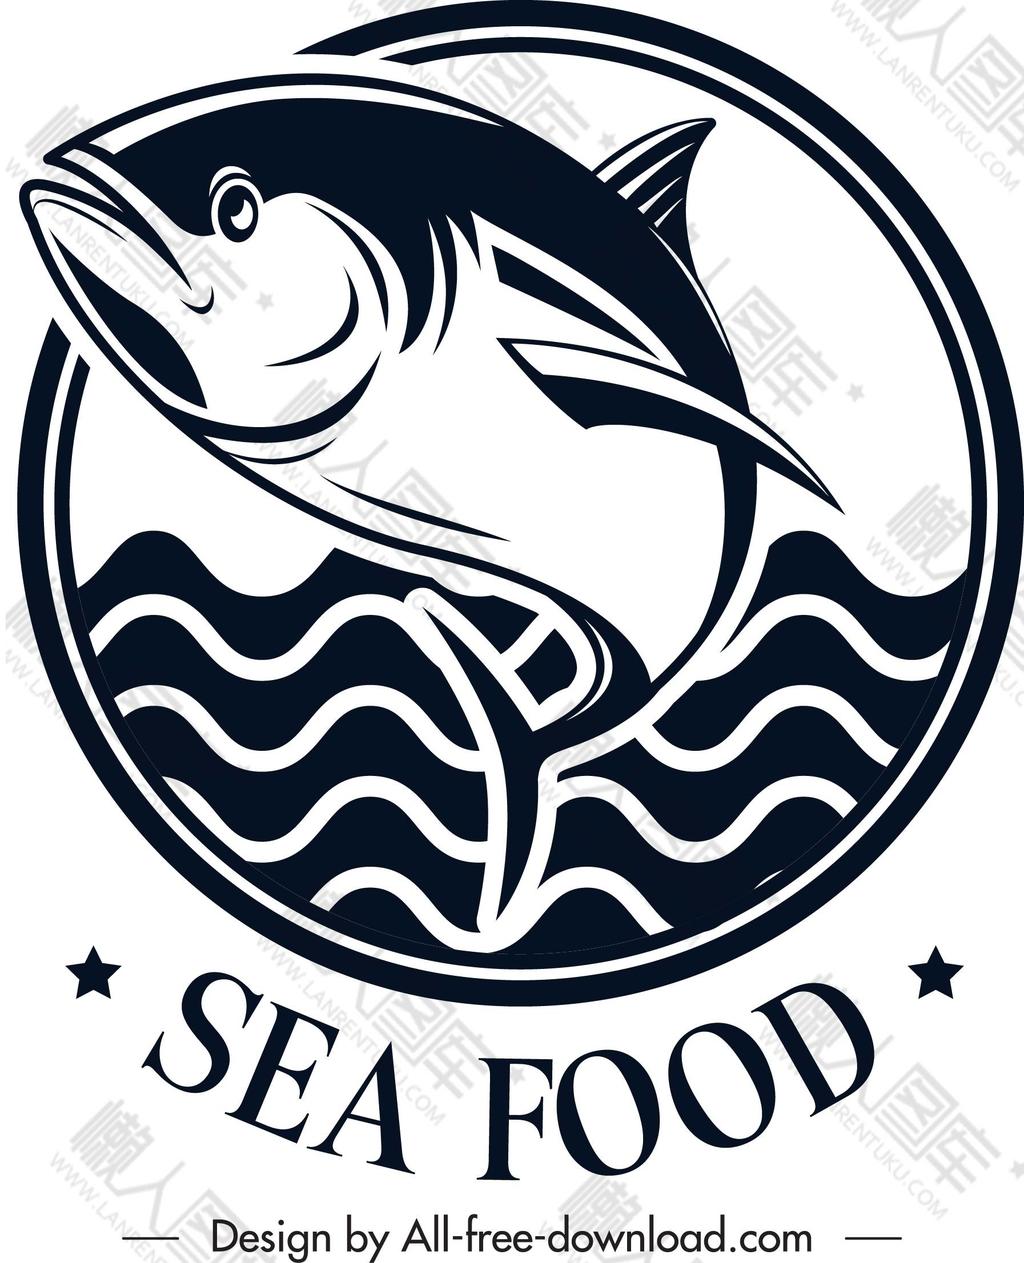 海鲜店logo